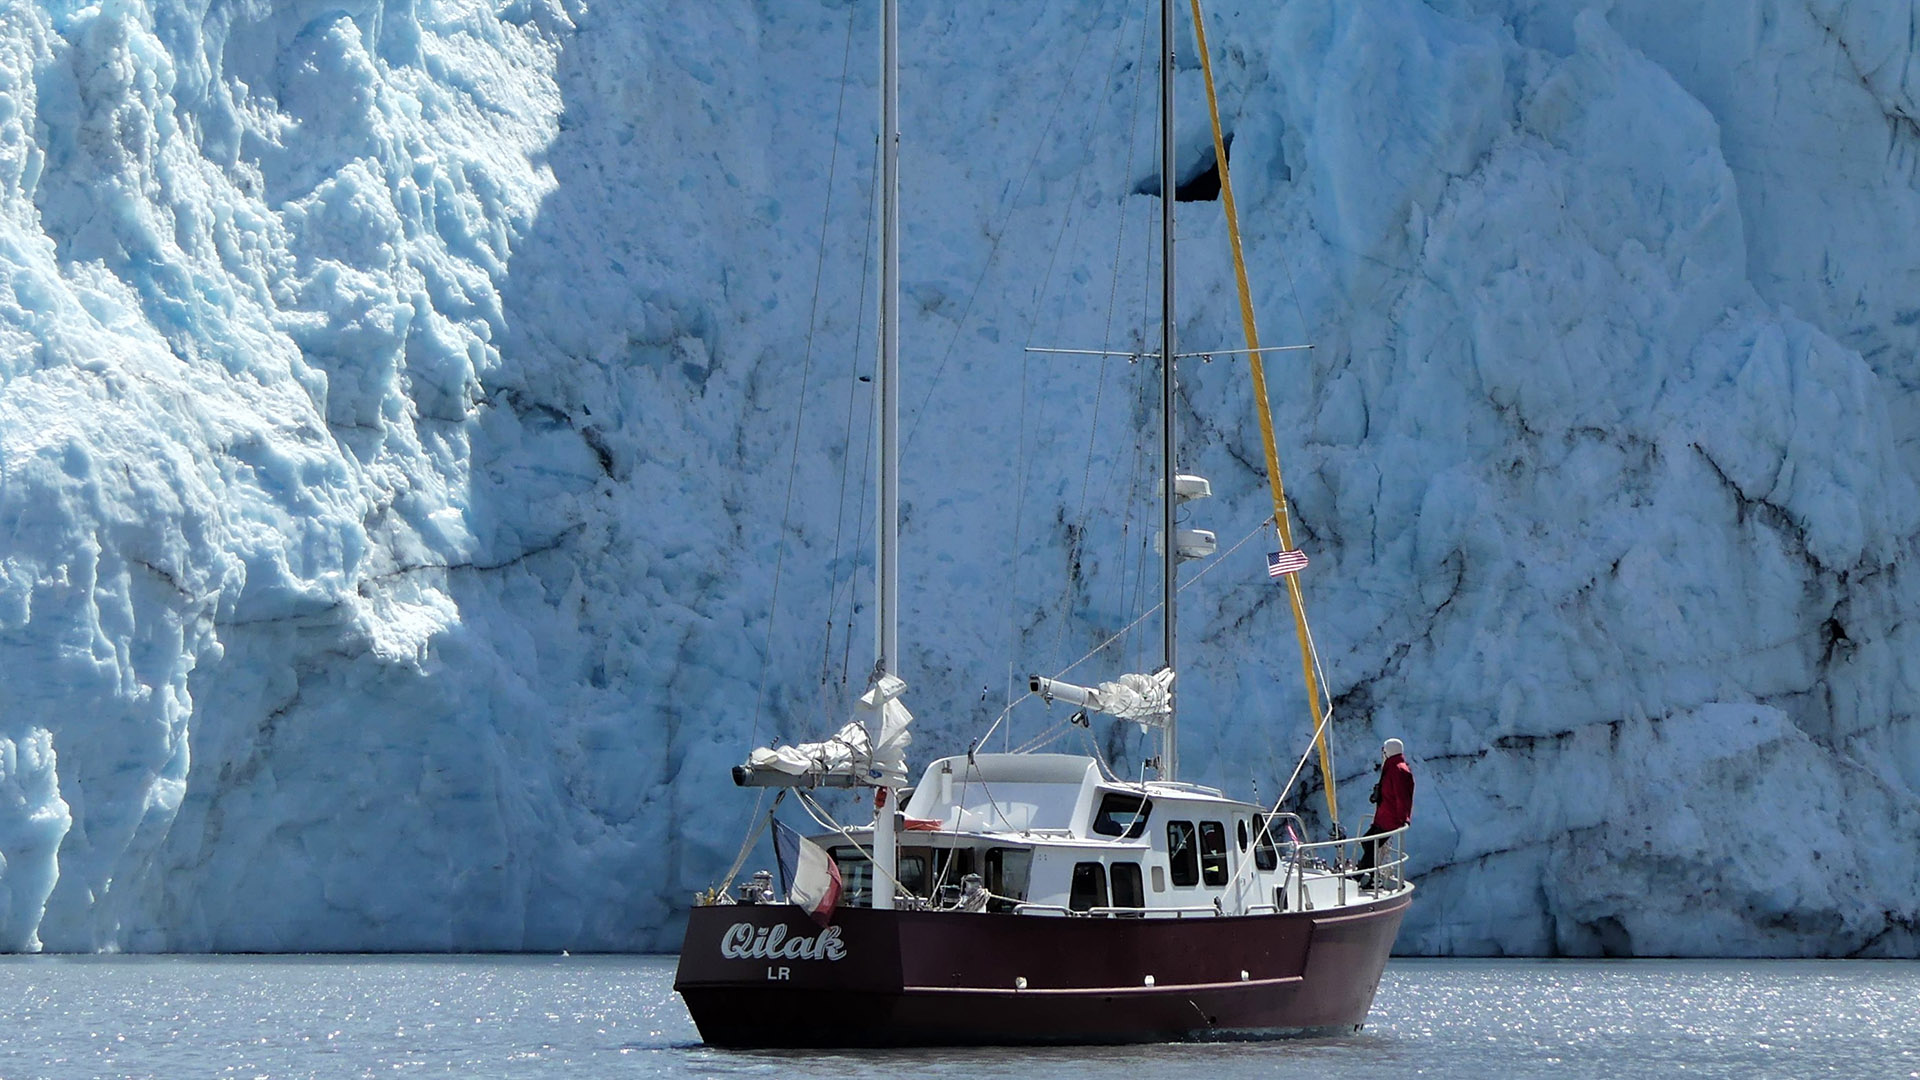 Qilak une goélette d'expédition pour naviguer dans les glaces